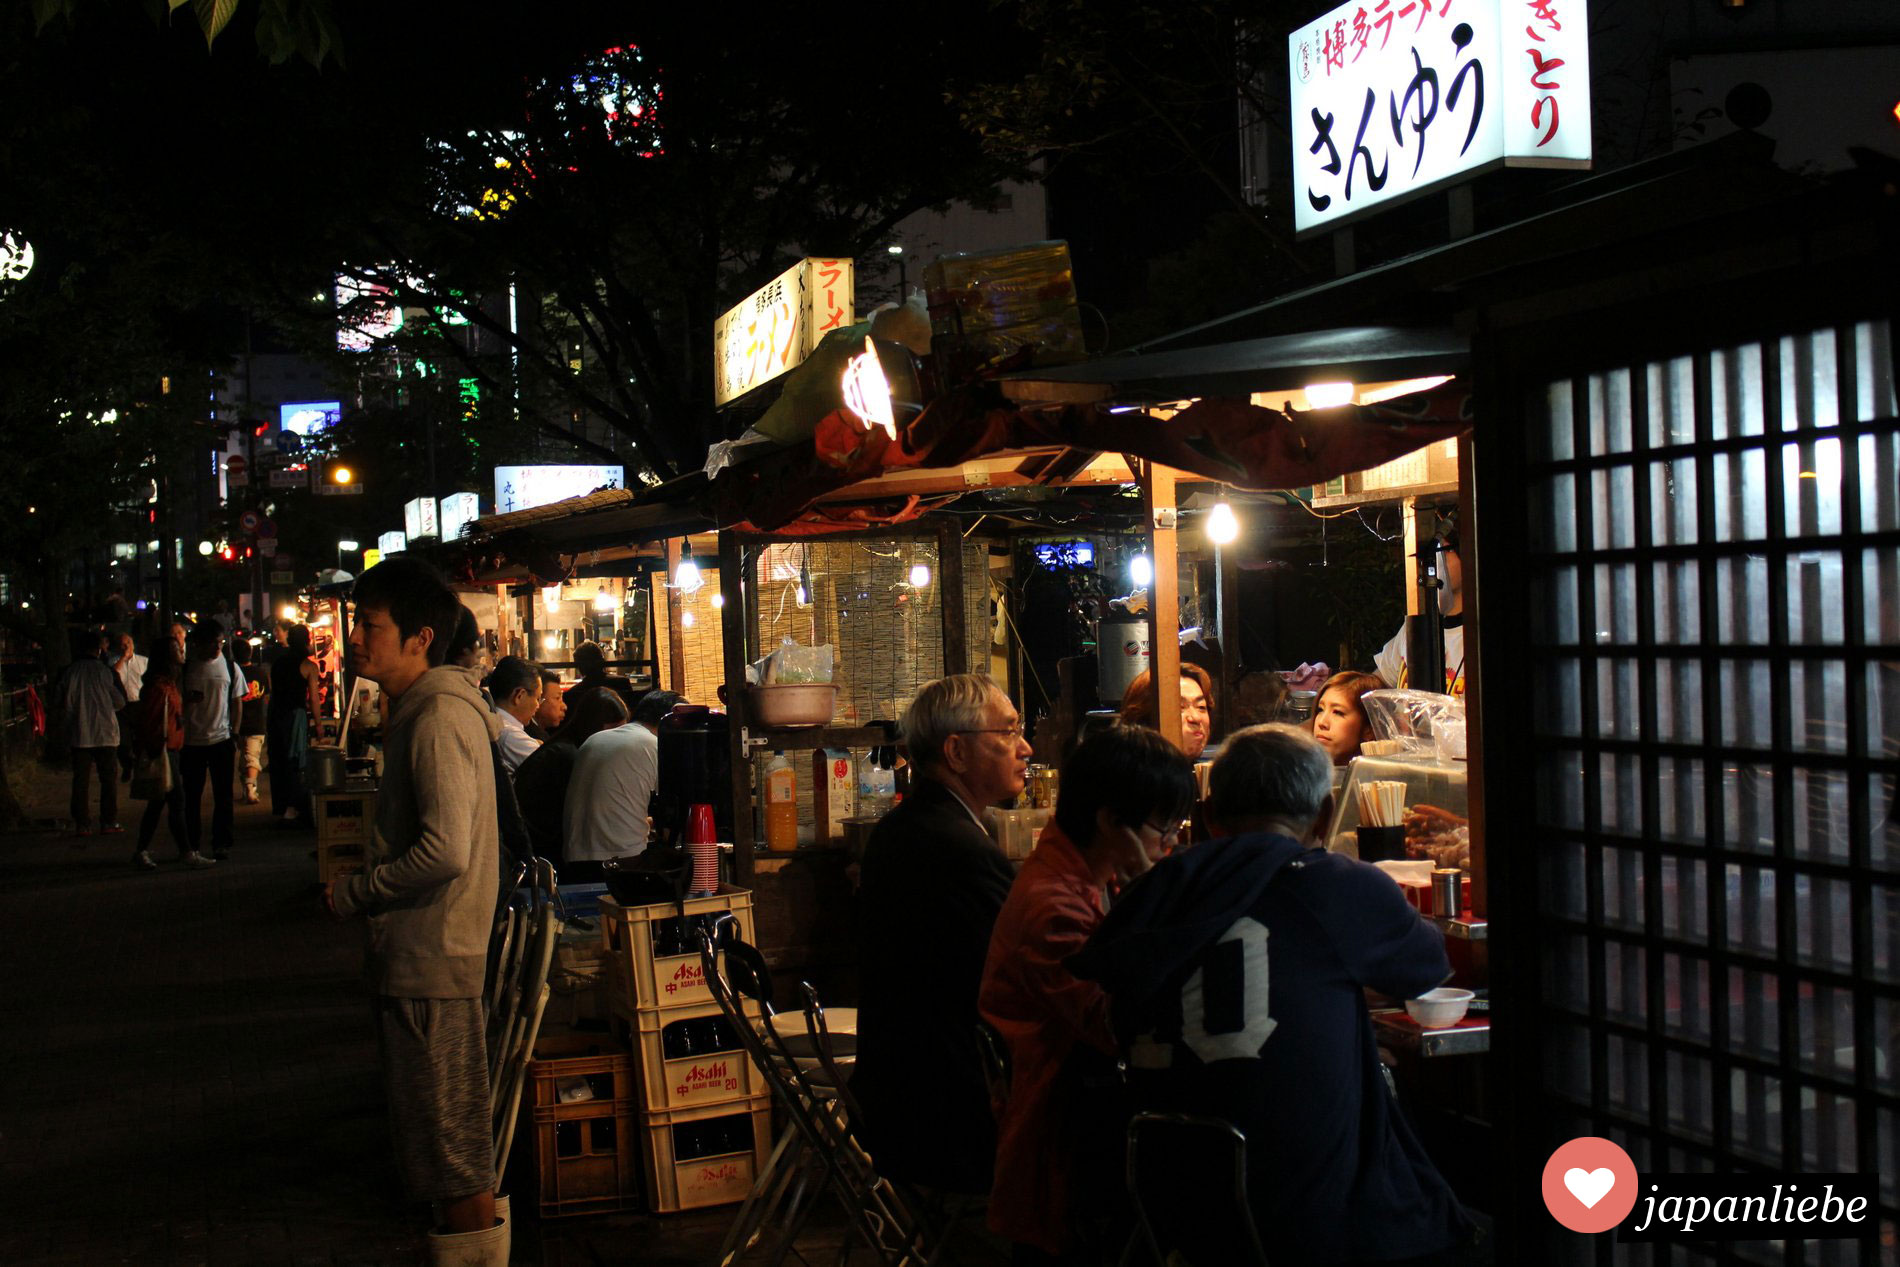 Yatai heißen die berühmten Freiluft-Minirestaurants in Fukuoka, von denen über 120 Stück über die ganze Stadt verteilt sind.